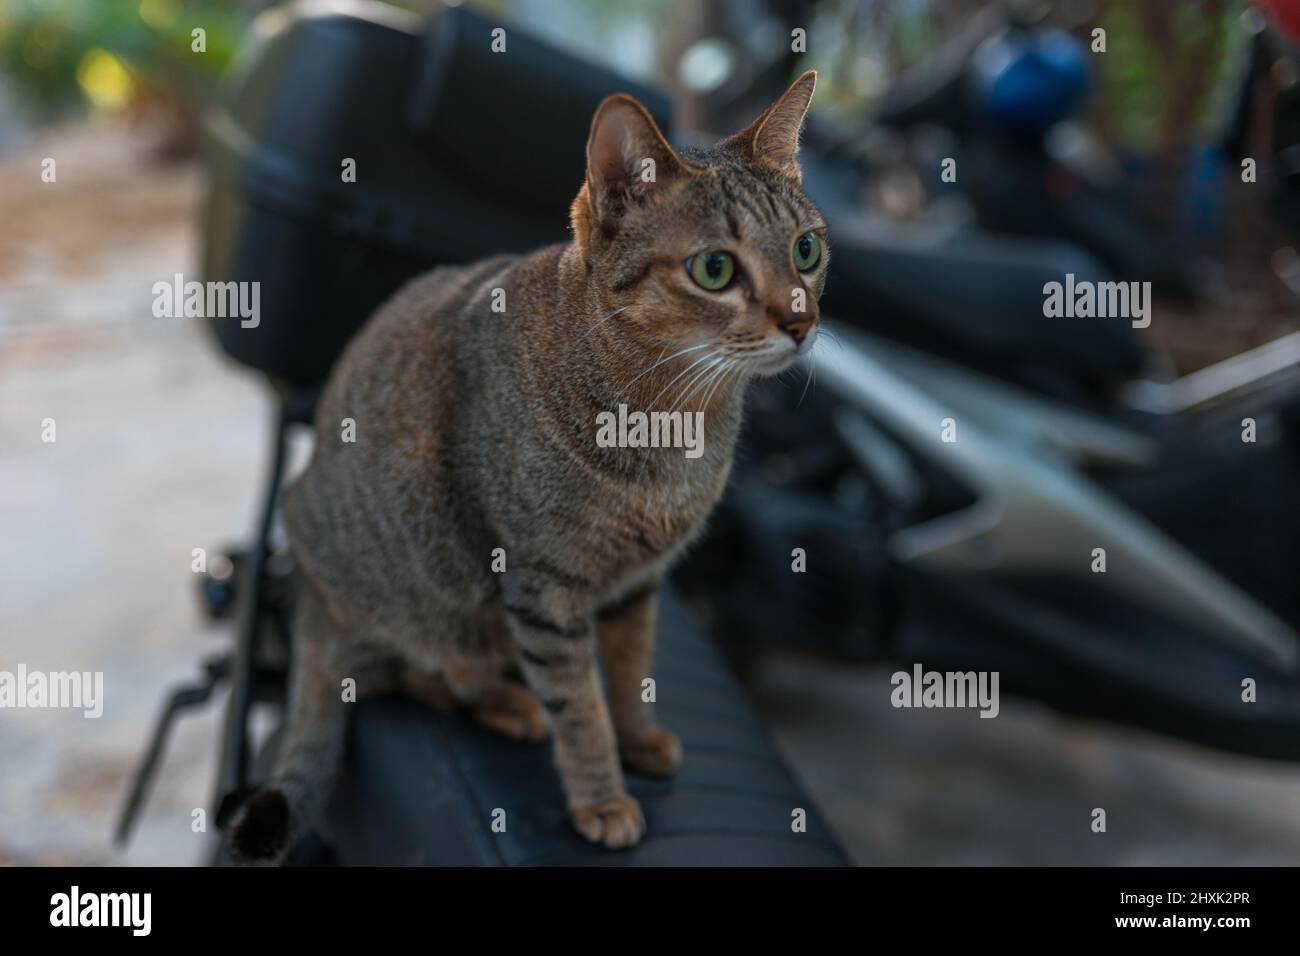 Gatto grigio-marrone con occhi verdi si siede su una moto. Carino gattino con occhi grandi. Animali domestici deliziosi all'aperto. Foto di alta qualità Foto Stock